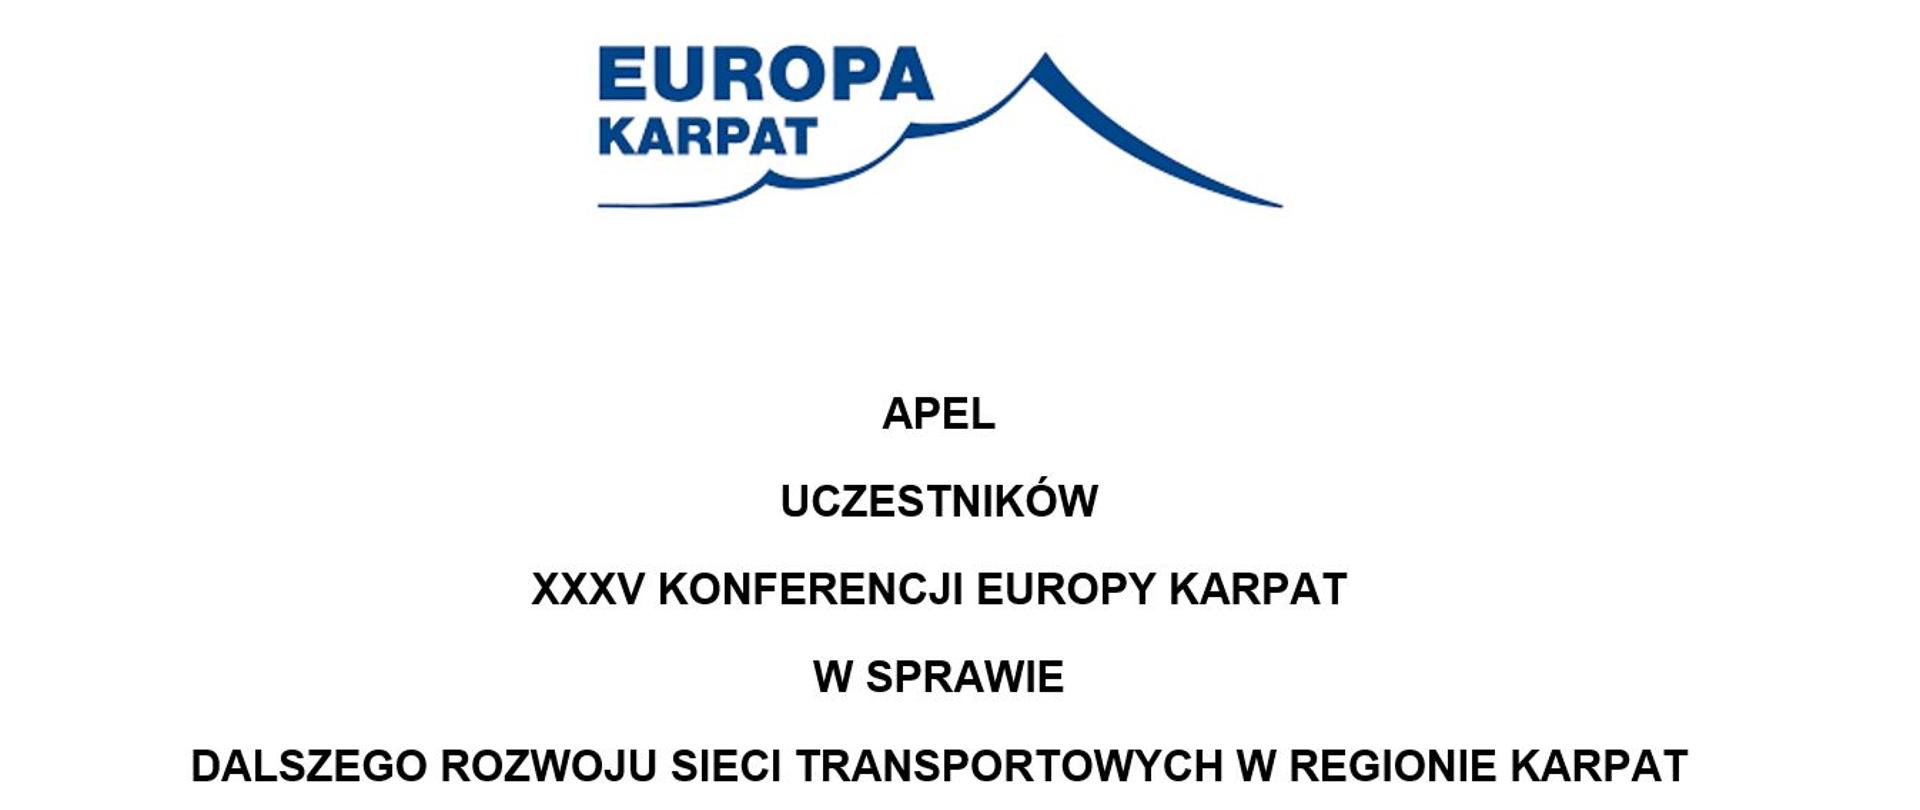 Europa Karpat jednym głosem o potrzebach transportowych